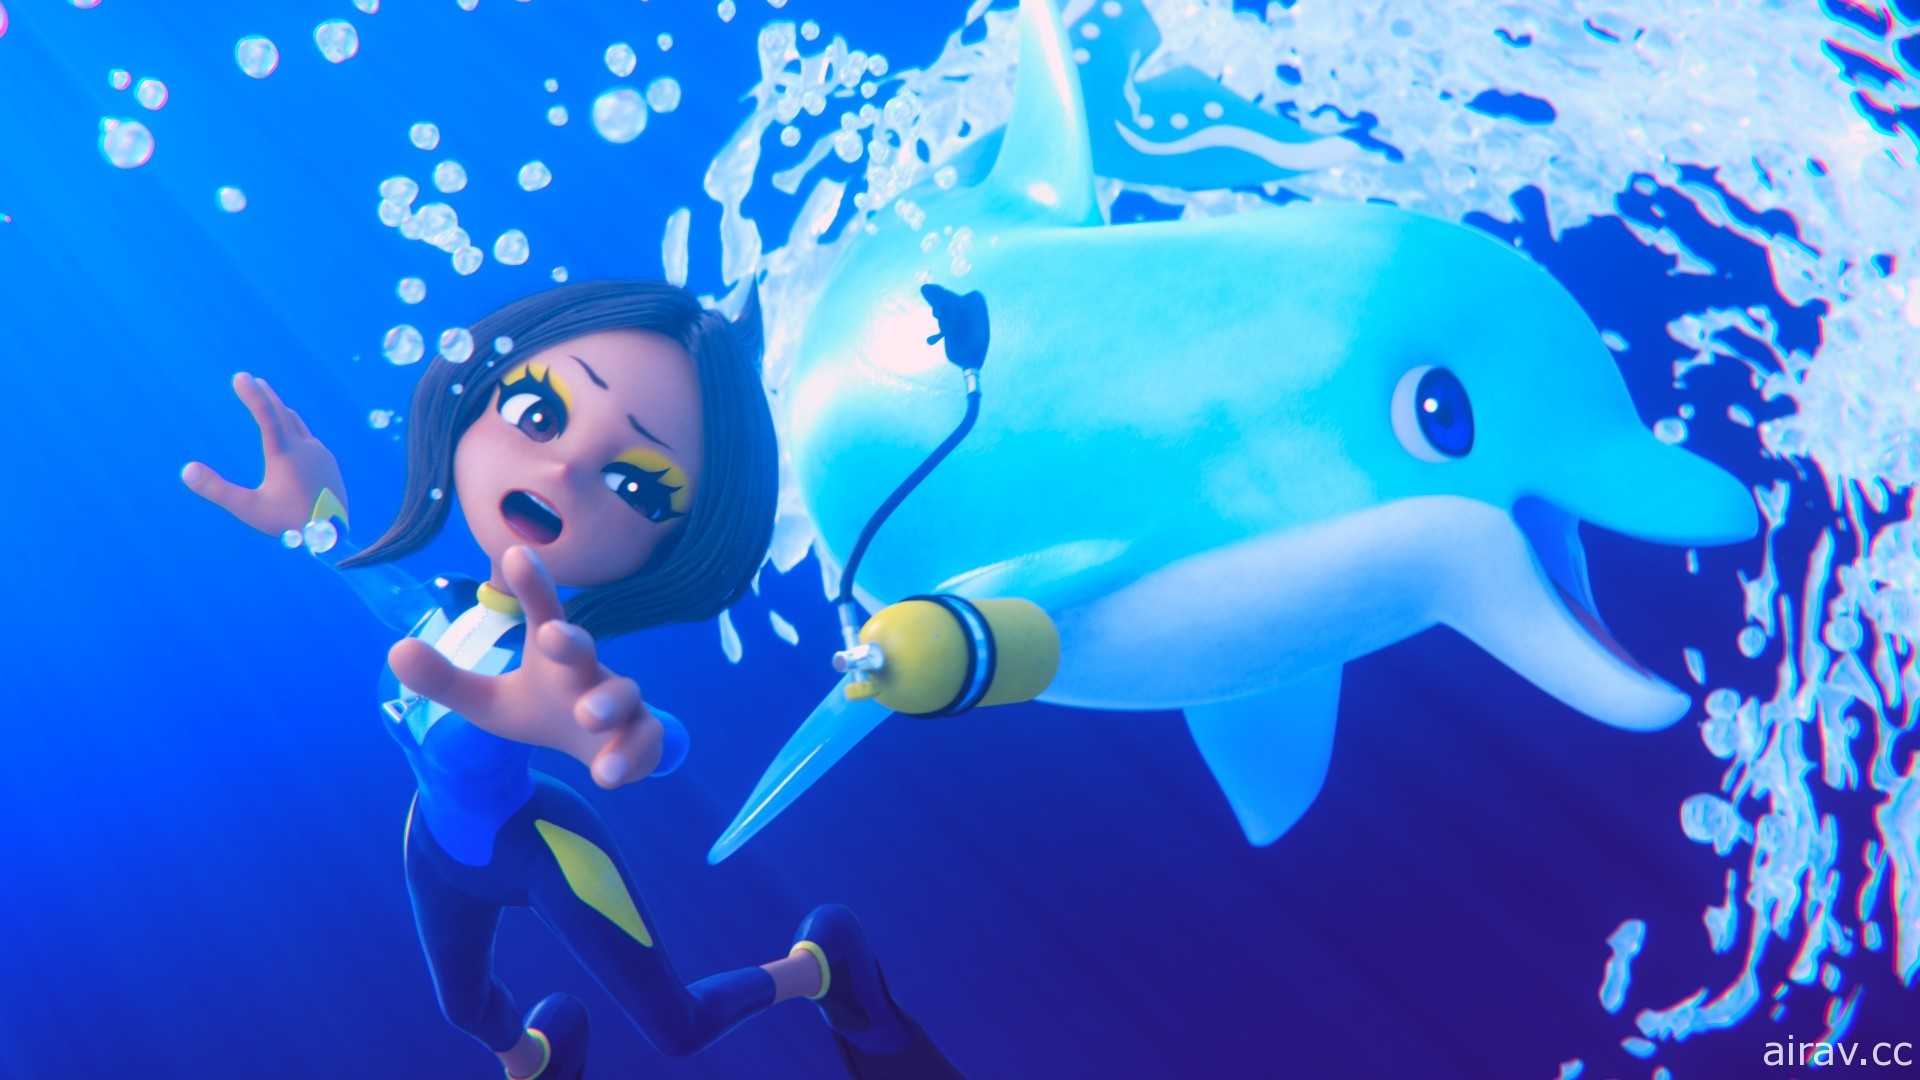 《巴兰的异想奇境》新公开两个心象世界 最喜欢海豚的潜水员与爱虫少女